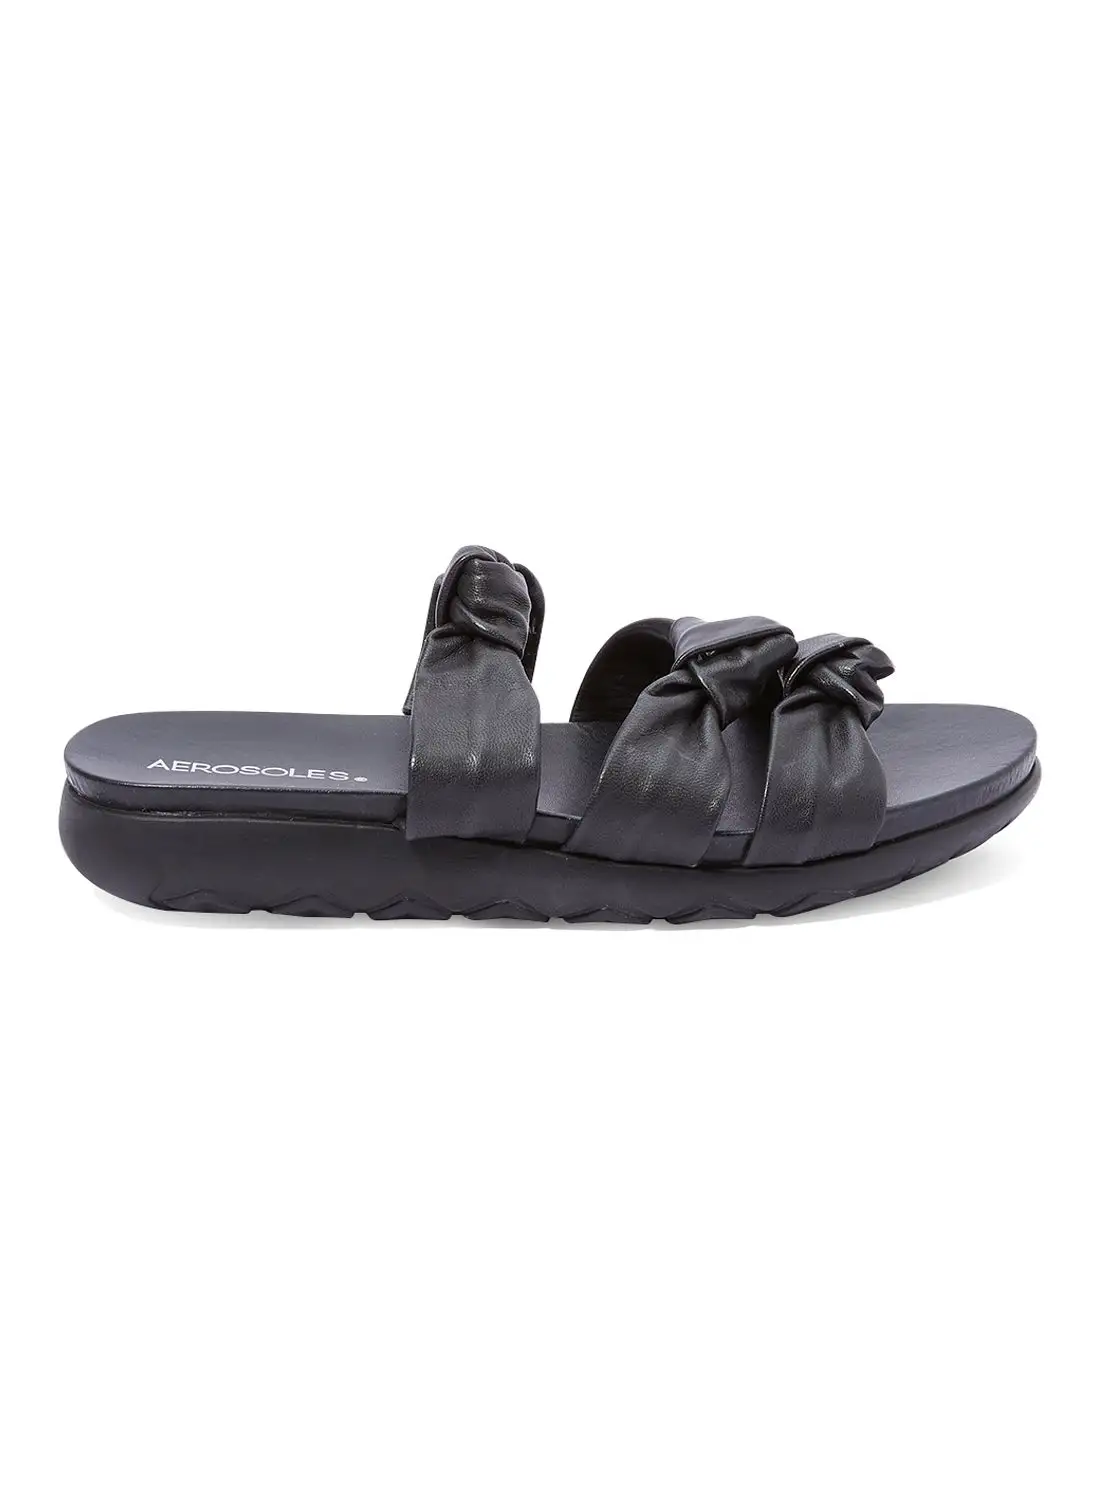 AEROSOLES Knotted Slides Sandals Black